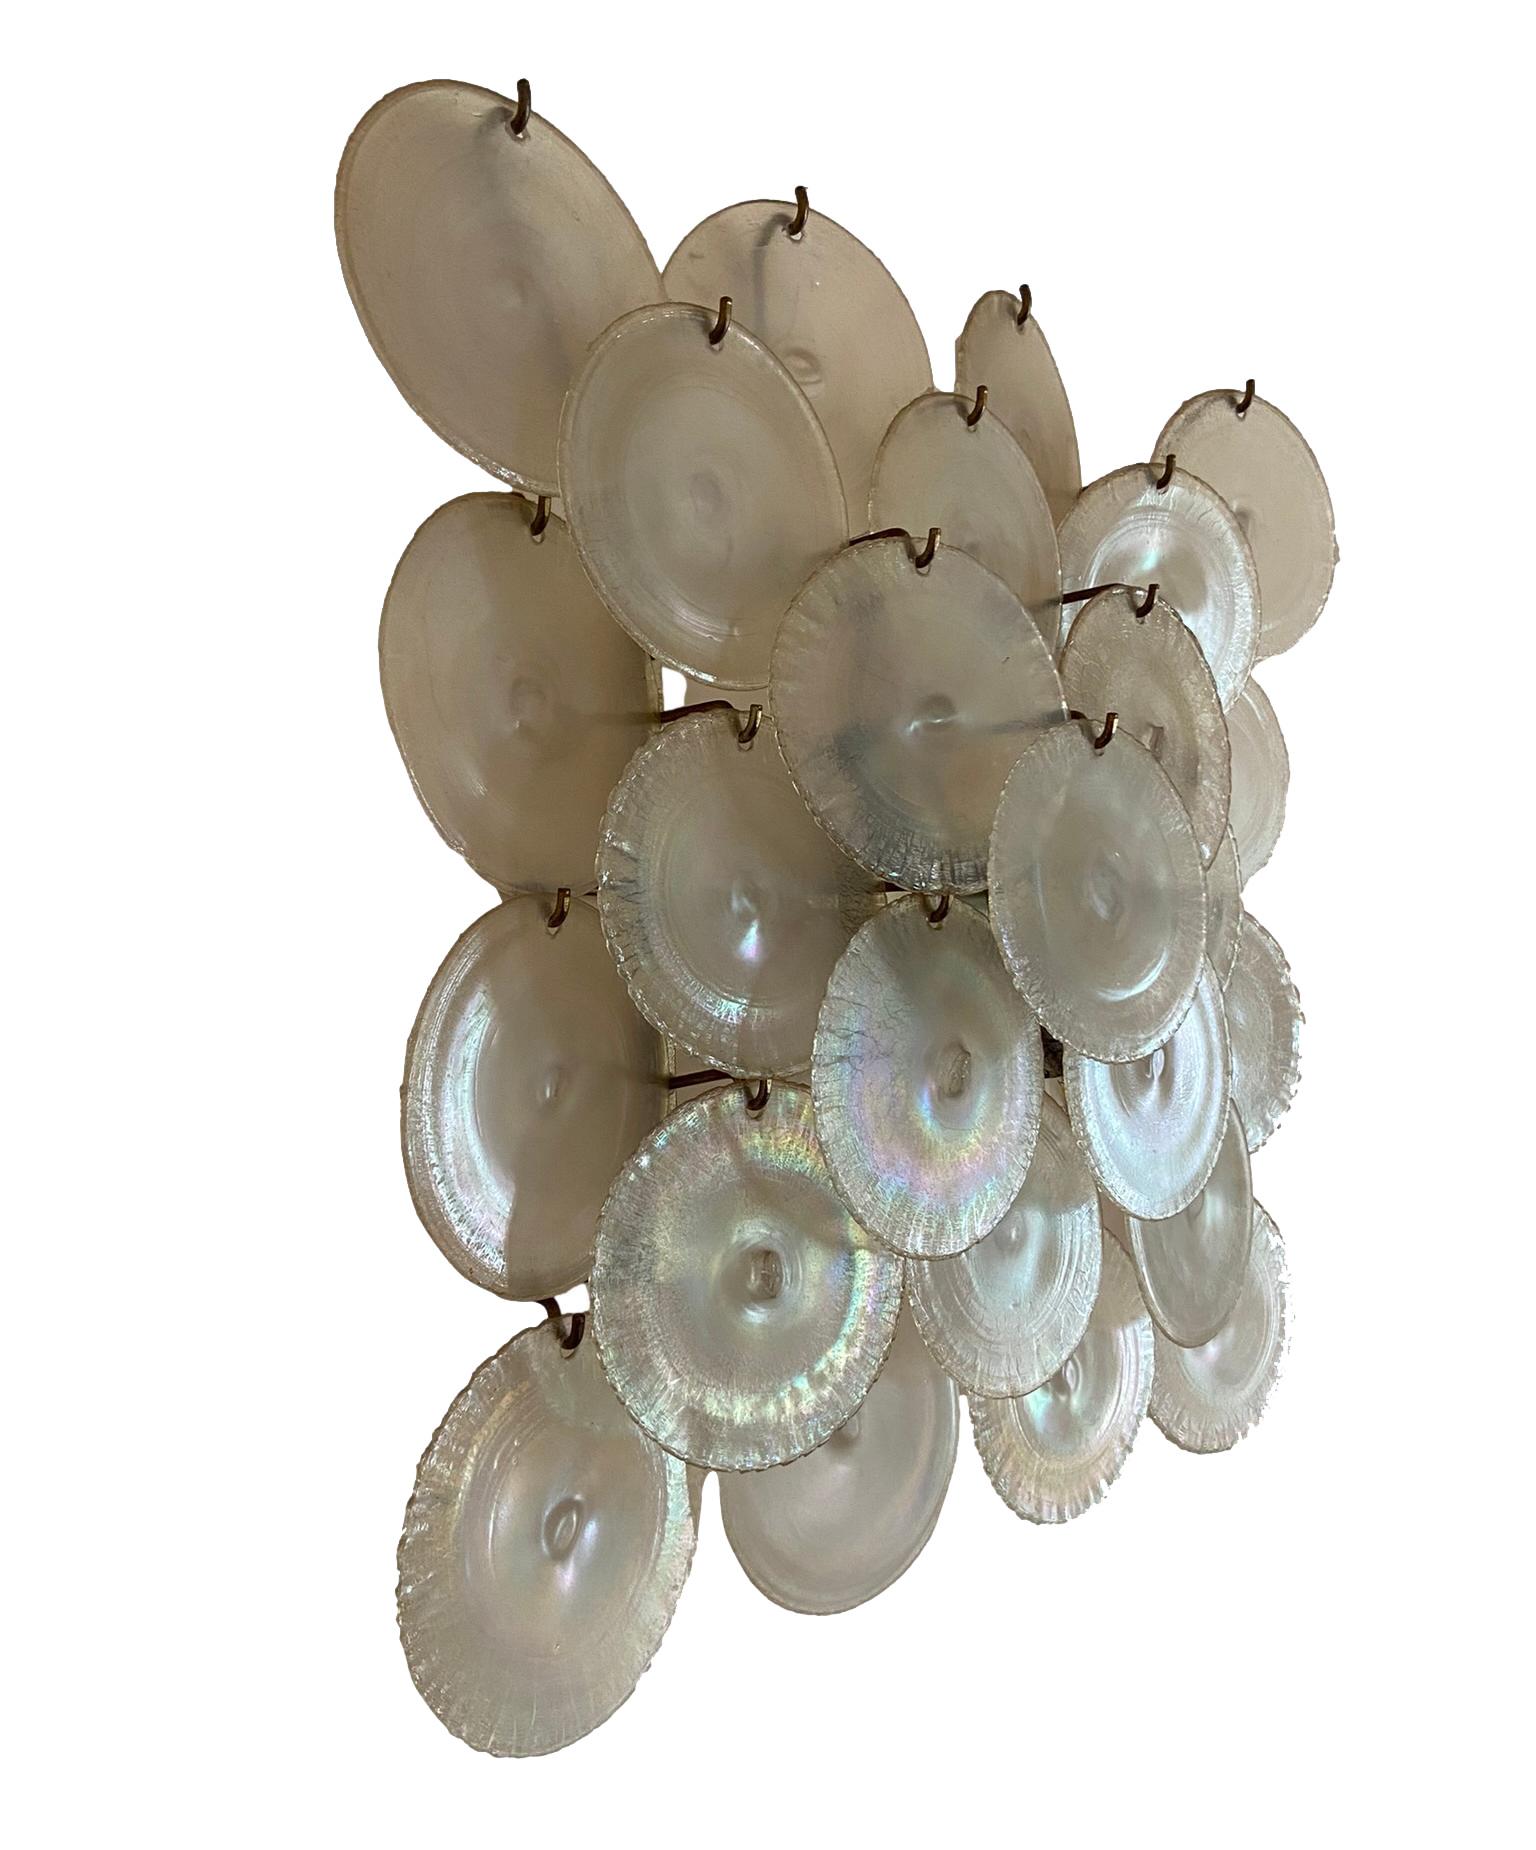 Grande applique en forme de disque en verre irisé de Murano, conçue par Carlo Nason pour Mazzega Murano, Italie, 1960. L'applique repose sur une structure en métal nickelé avec quatre sources lumineuses.  Très bon état.  Le verre, aujourd'hui